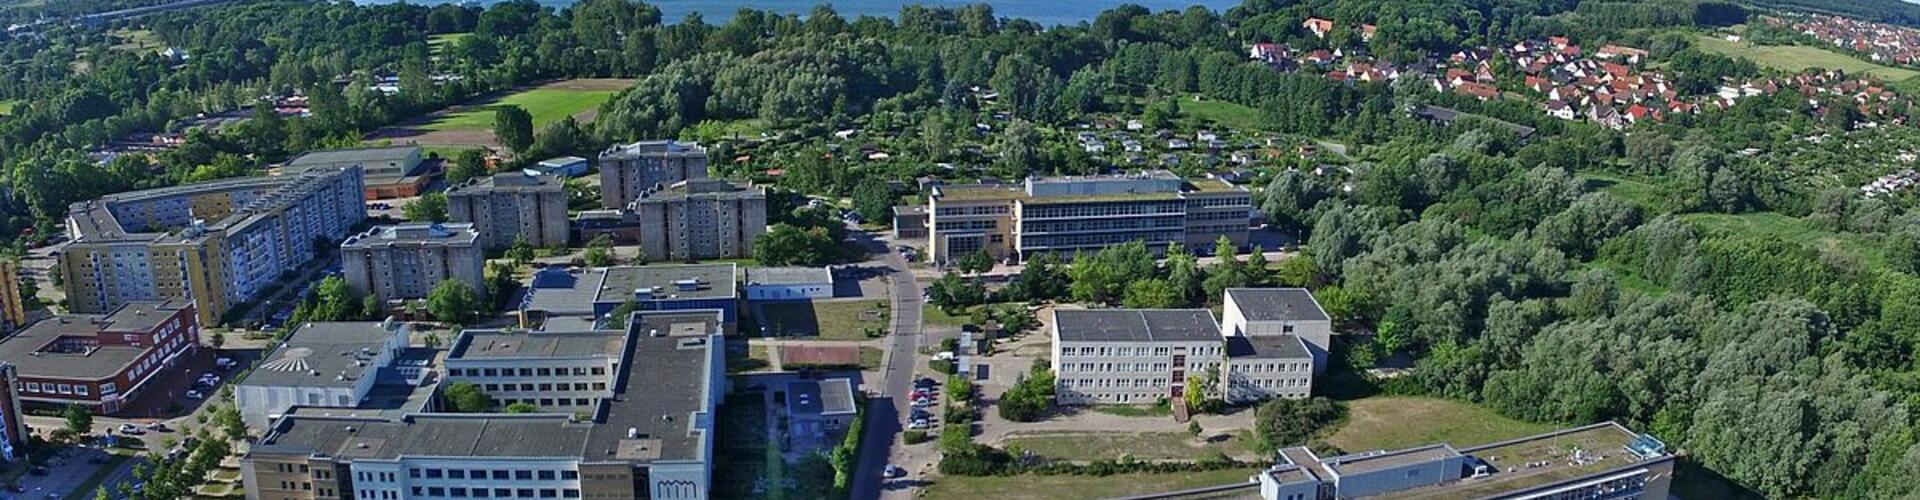 Campus der Hochschule Neubrandenburg - Luftbild